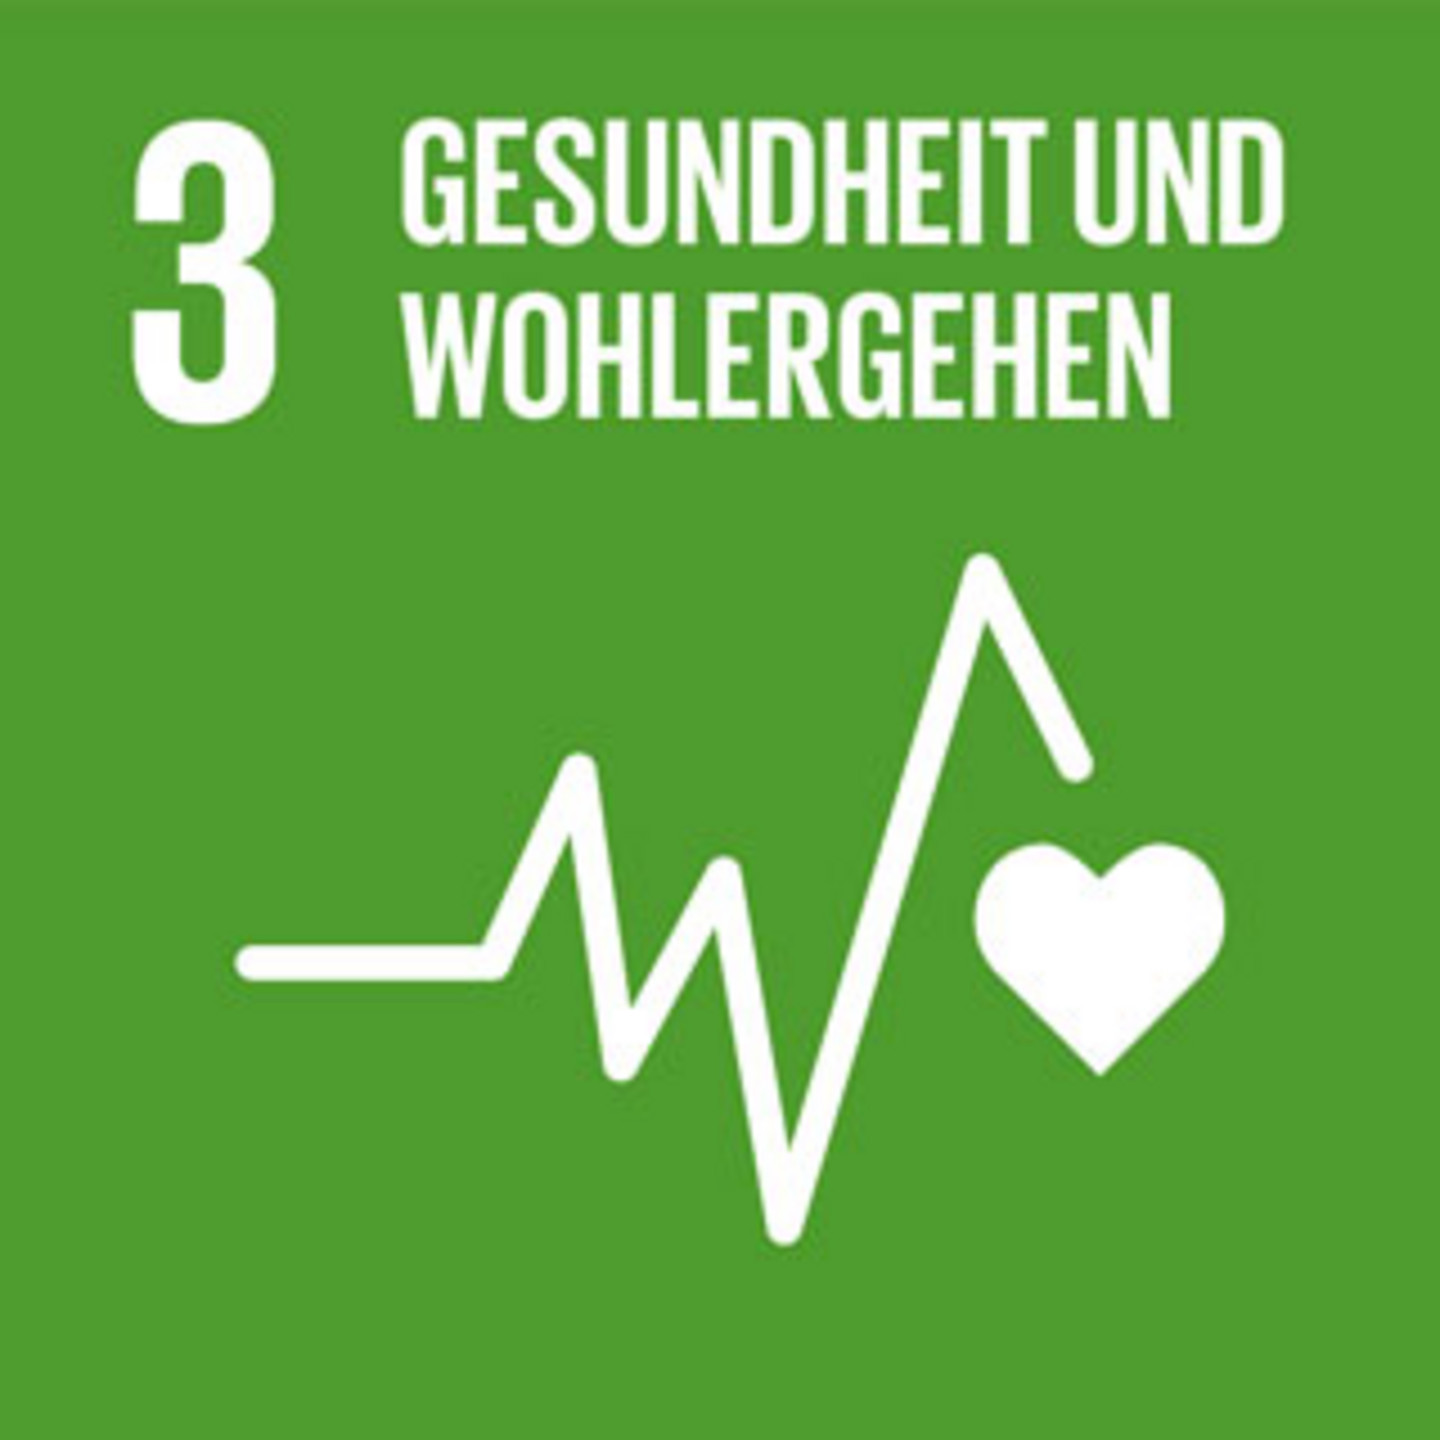 Ein grüner Hintergrund mit der Schrift "Gesundheit und Wohlergehen". Abgebildet ist ein Symbol des Herzschlags.